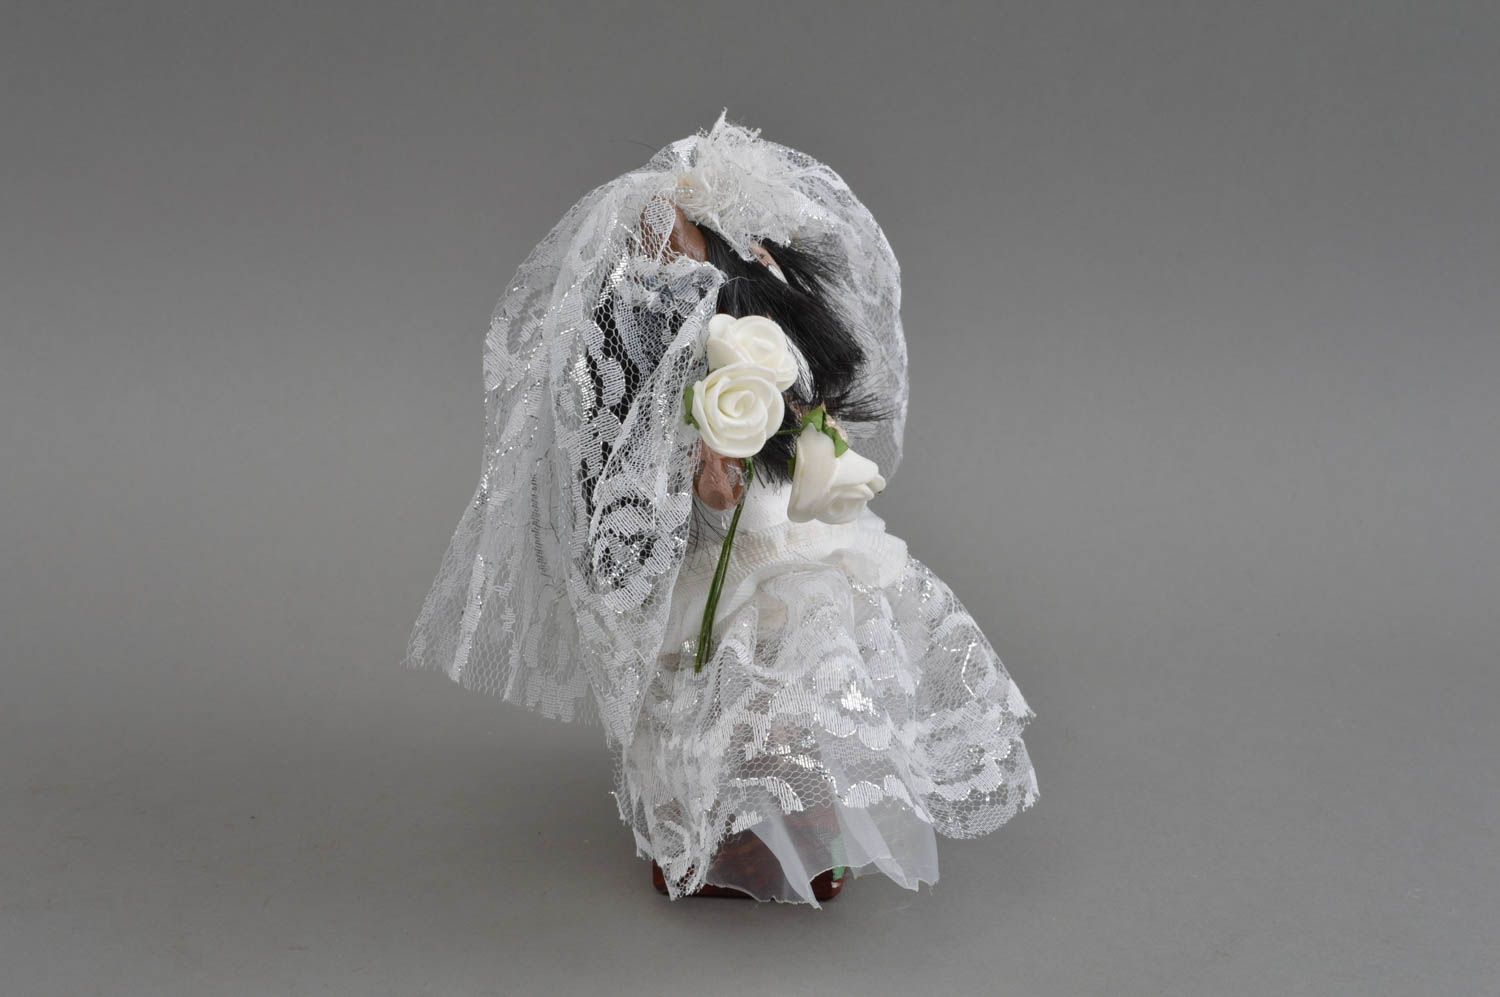 Игрушка на подставке ручной работы из льна расписная оригинальная Невеста фото 3